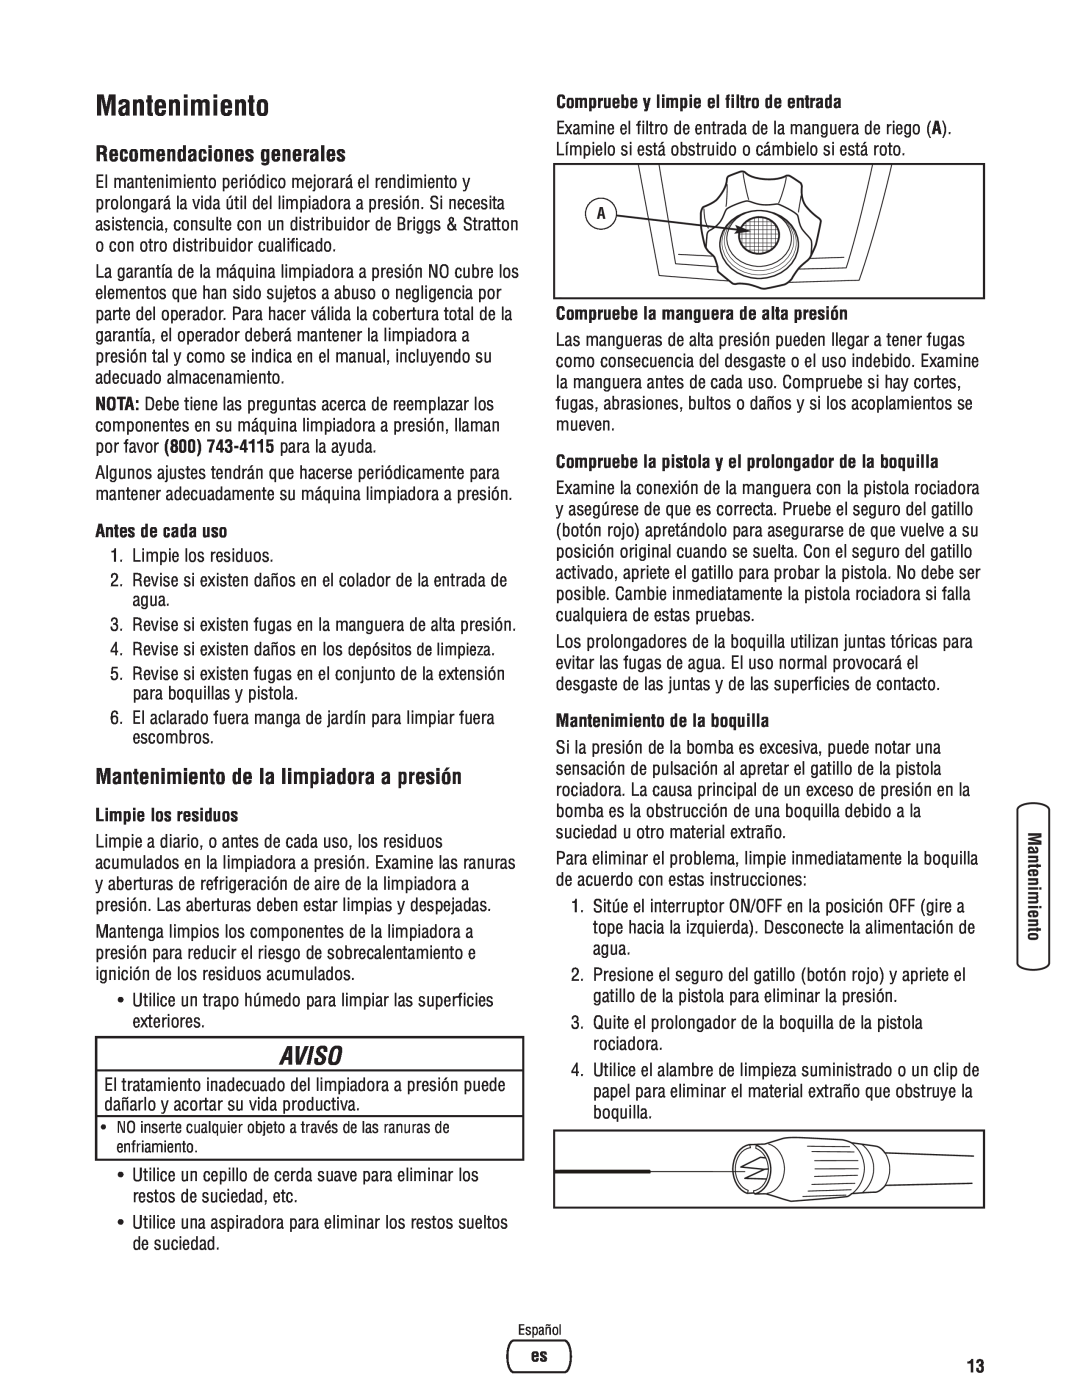 Briggs & Stratton Electric Pressure Washer manual Mantenimiento, Recomendaciones generales, Antes de cada uso, Aviso 